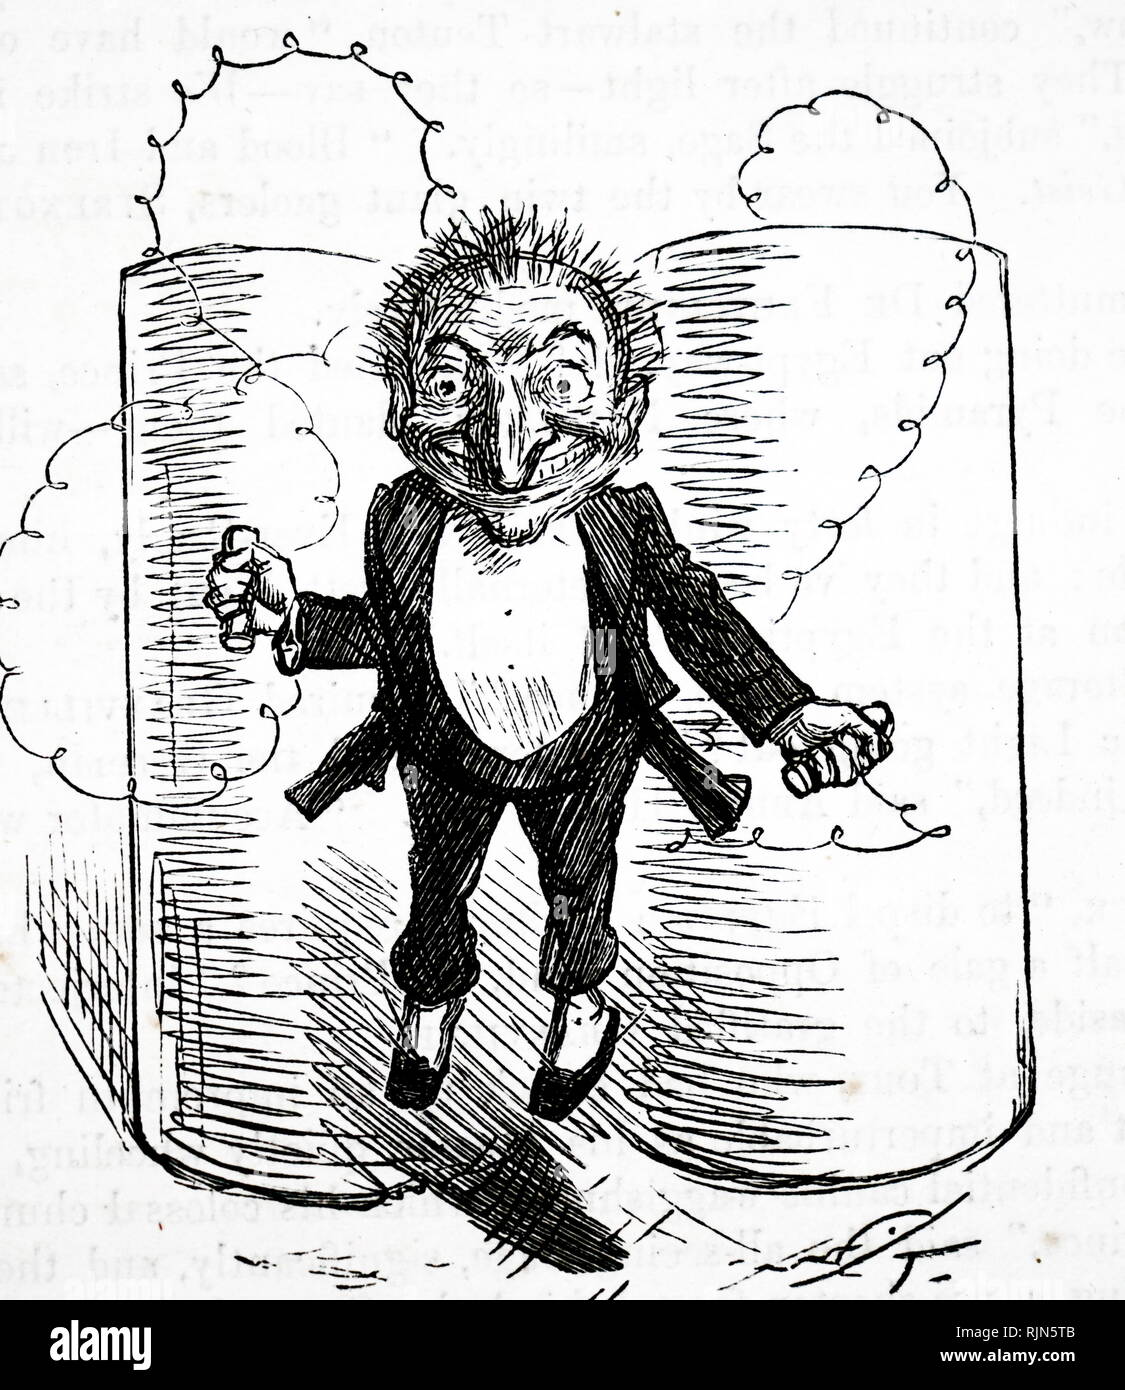 Herr Punch genießen die neuesten Party Game - elektrische Schocks. Karikatur aus dem Punch, London, 1. Juli 1882. Stockfoto